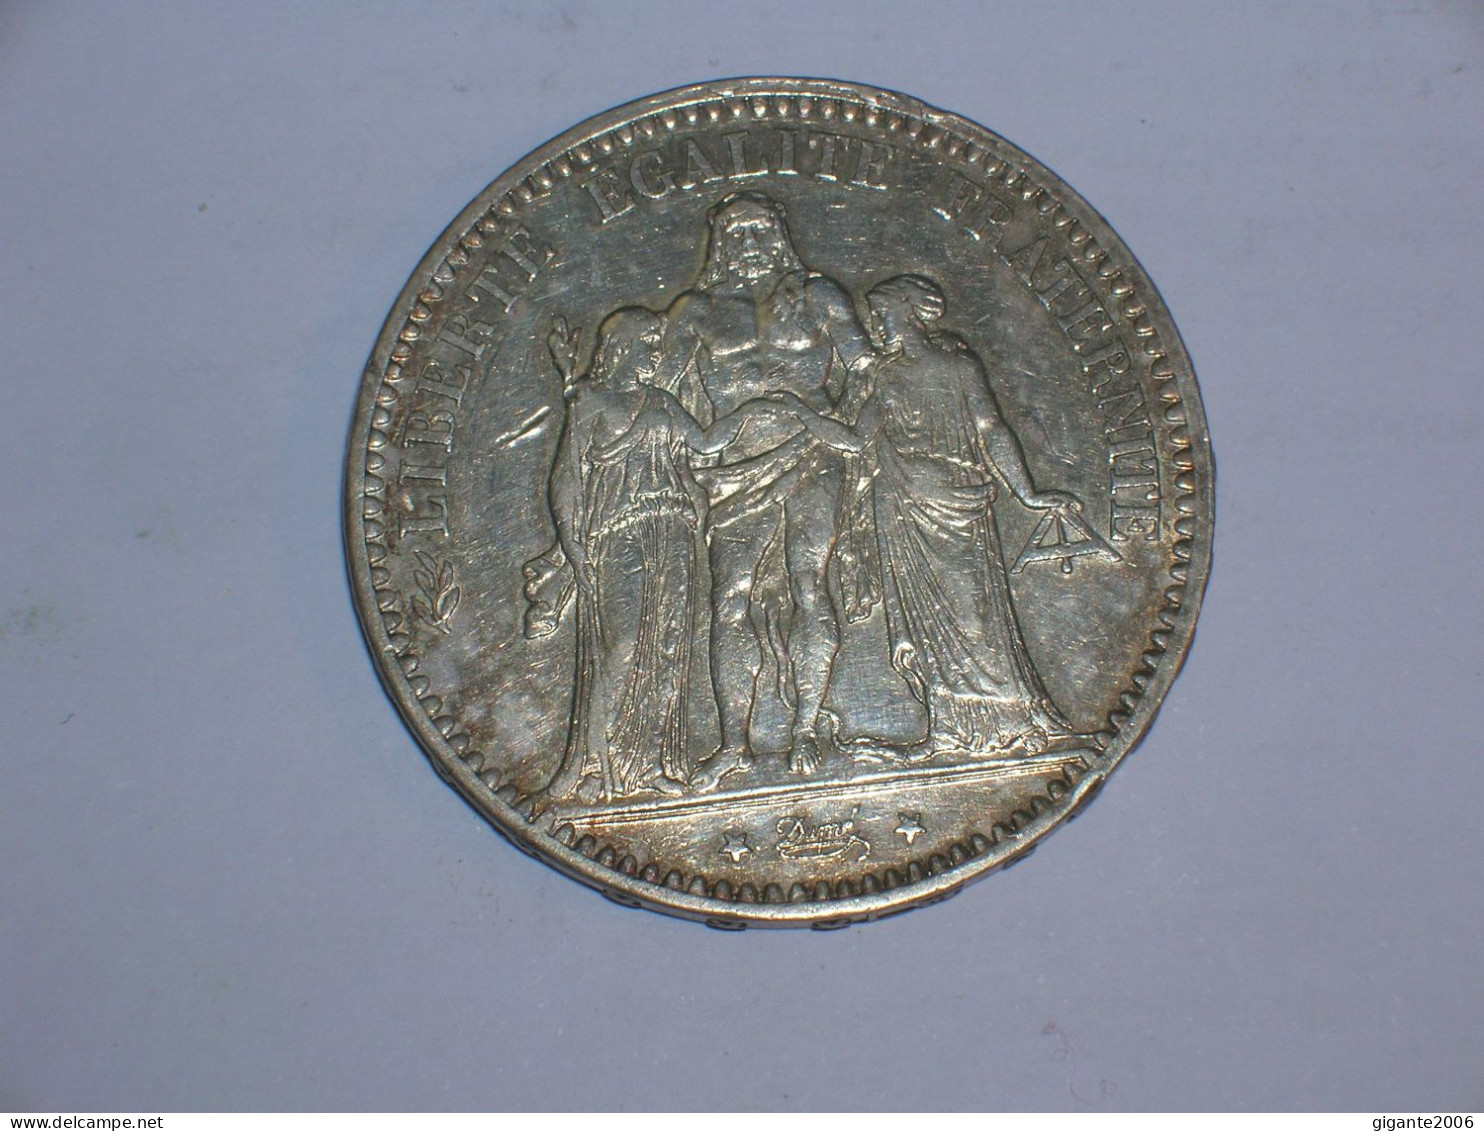 FRANCIA 5 FRANCOS 1875 A (14003) - 5 Francs